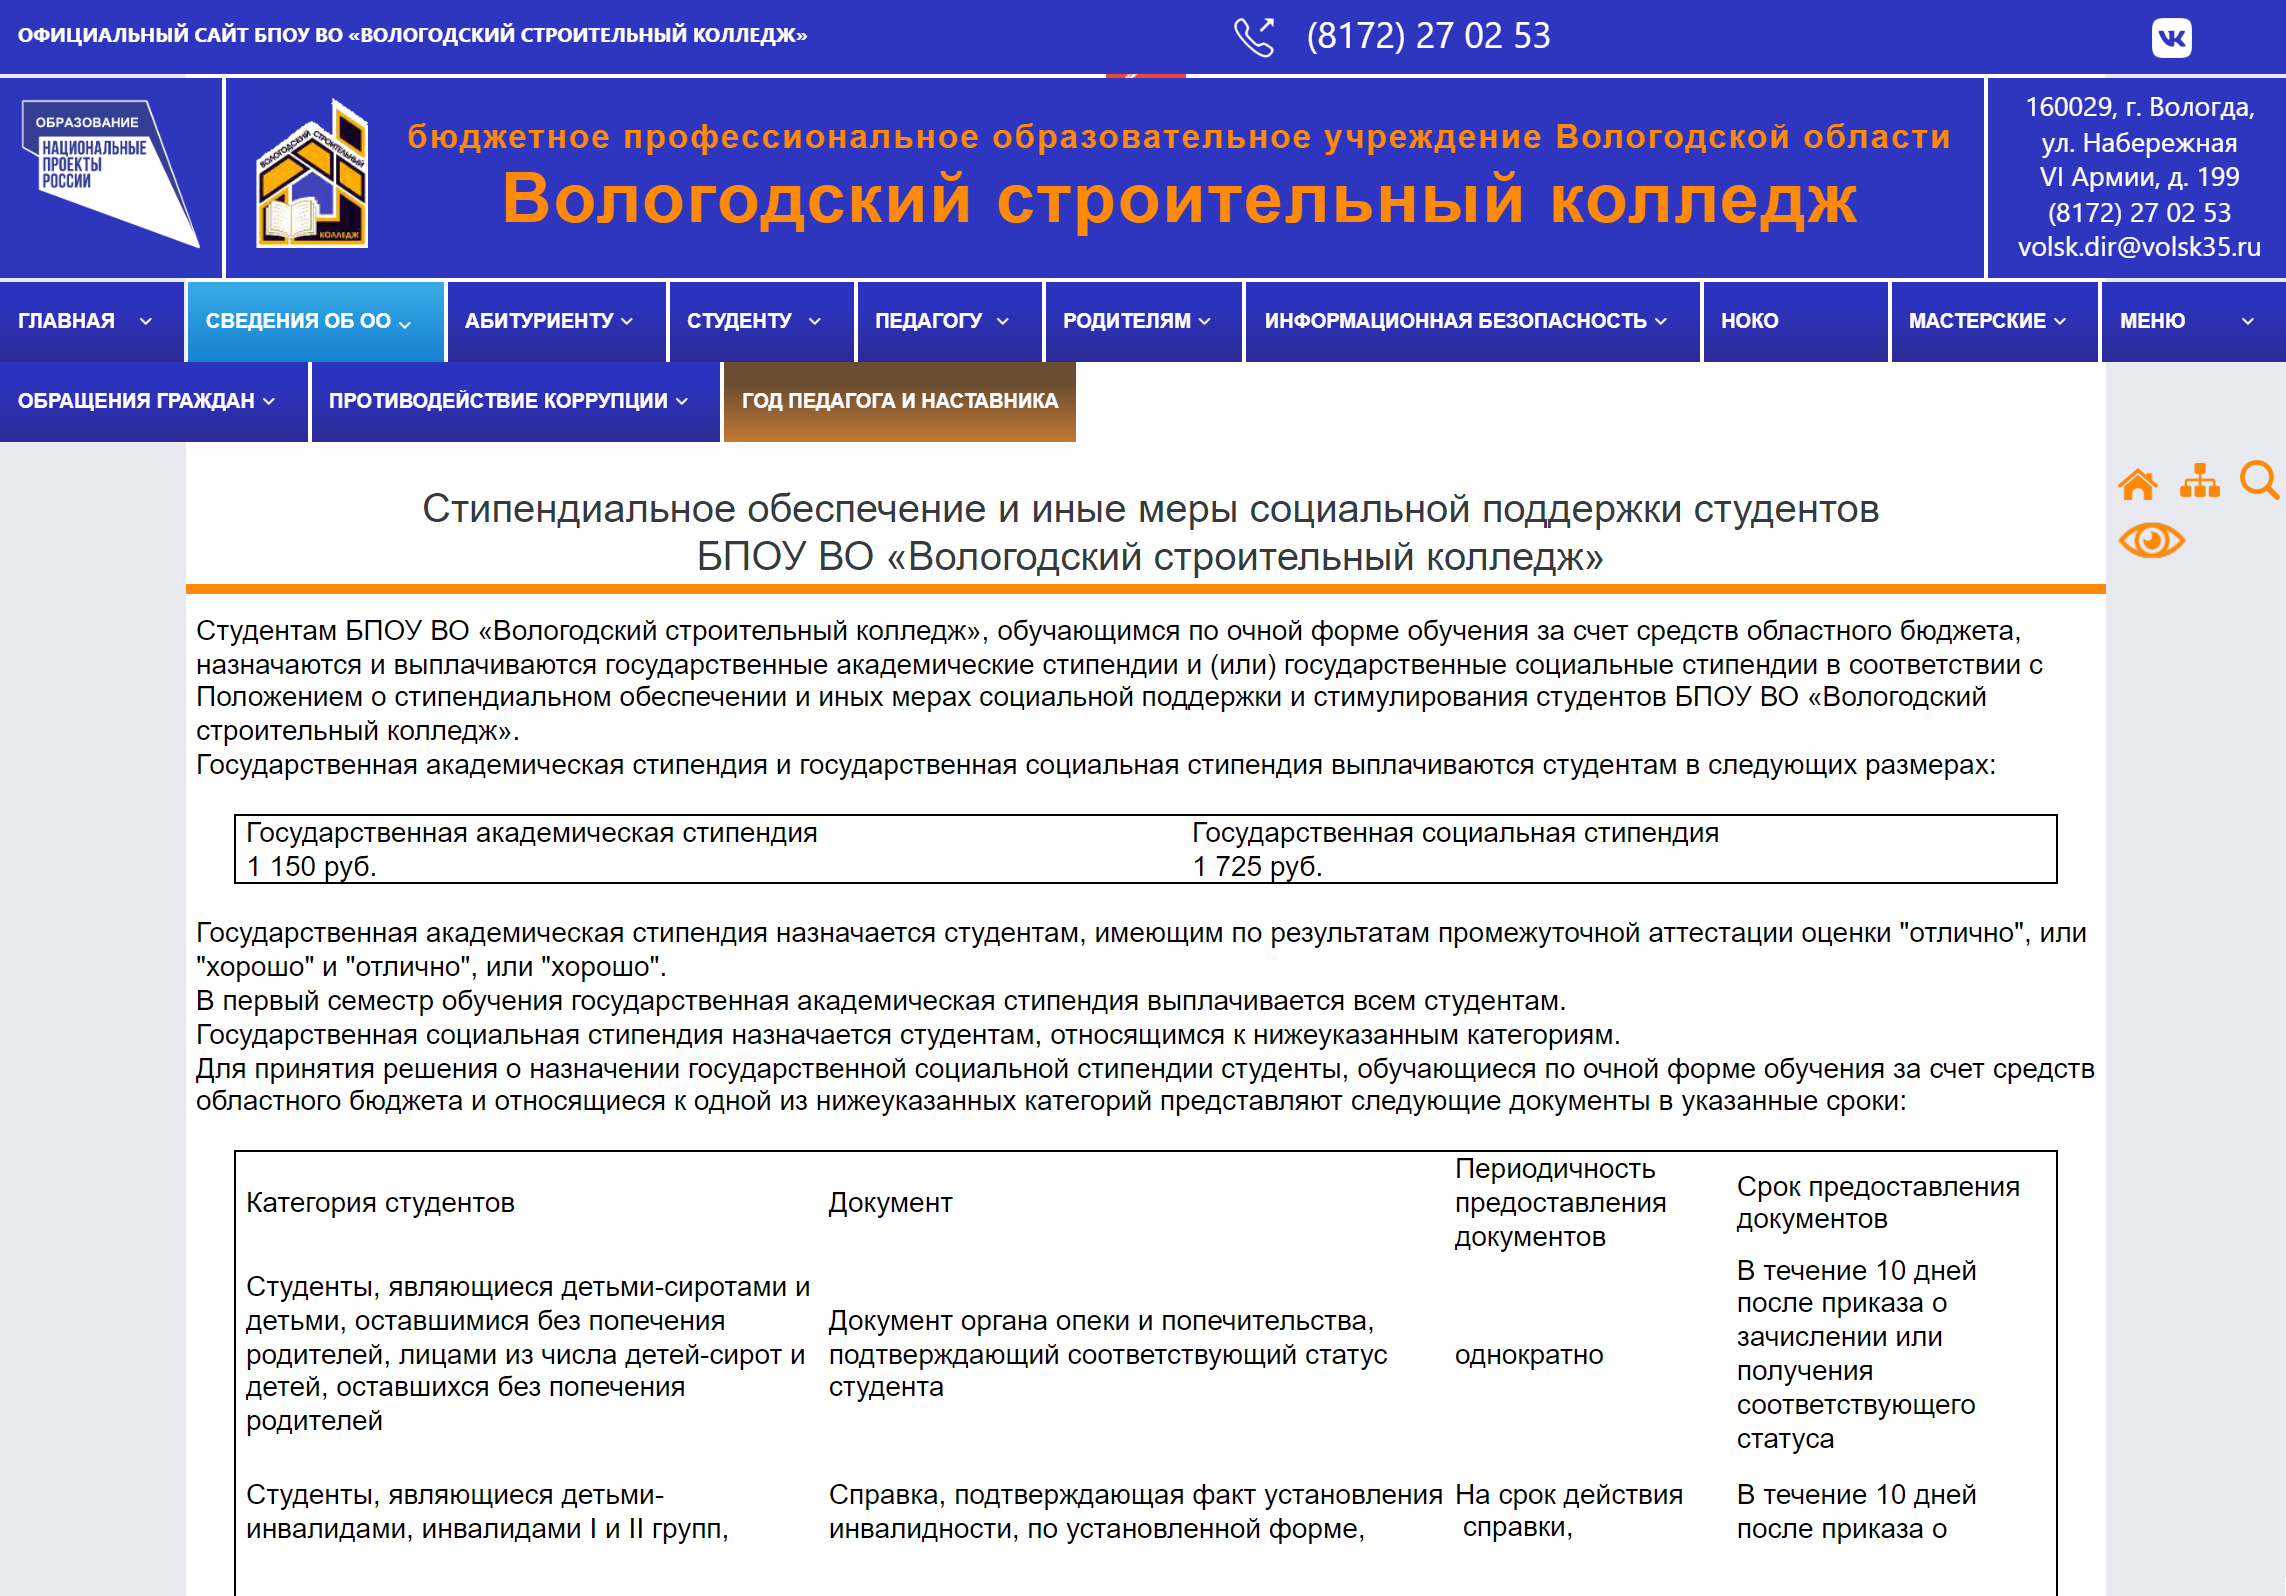 Аналогичный раздел на сайте Вологодского строительного колледжа. Источник: vologda-vsk.ru